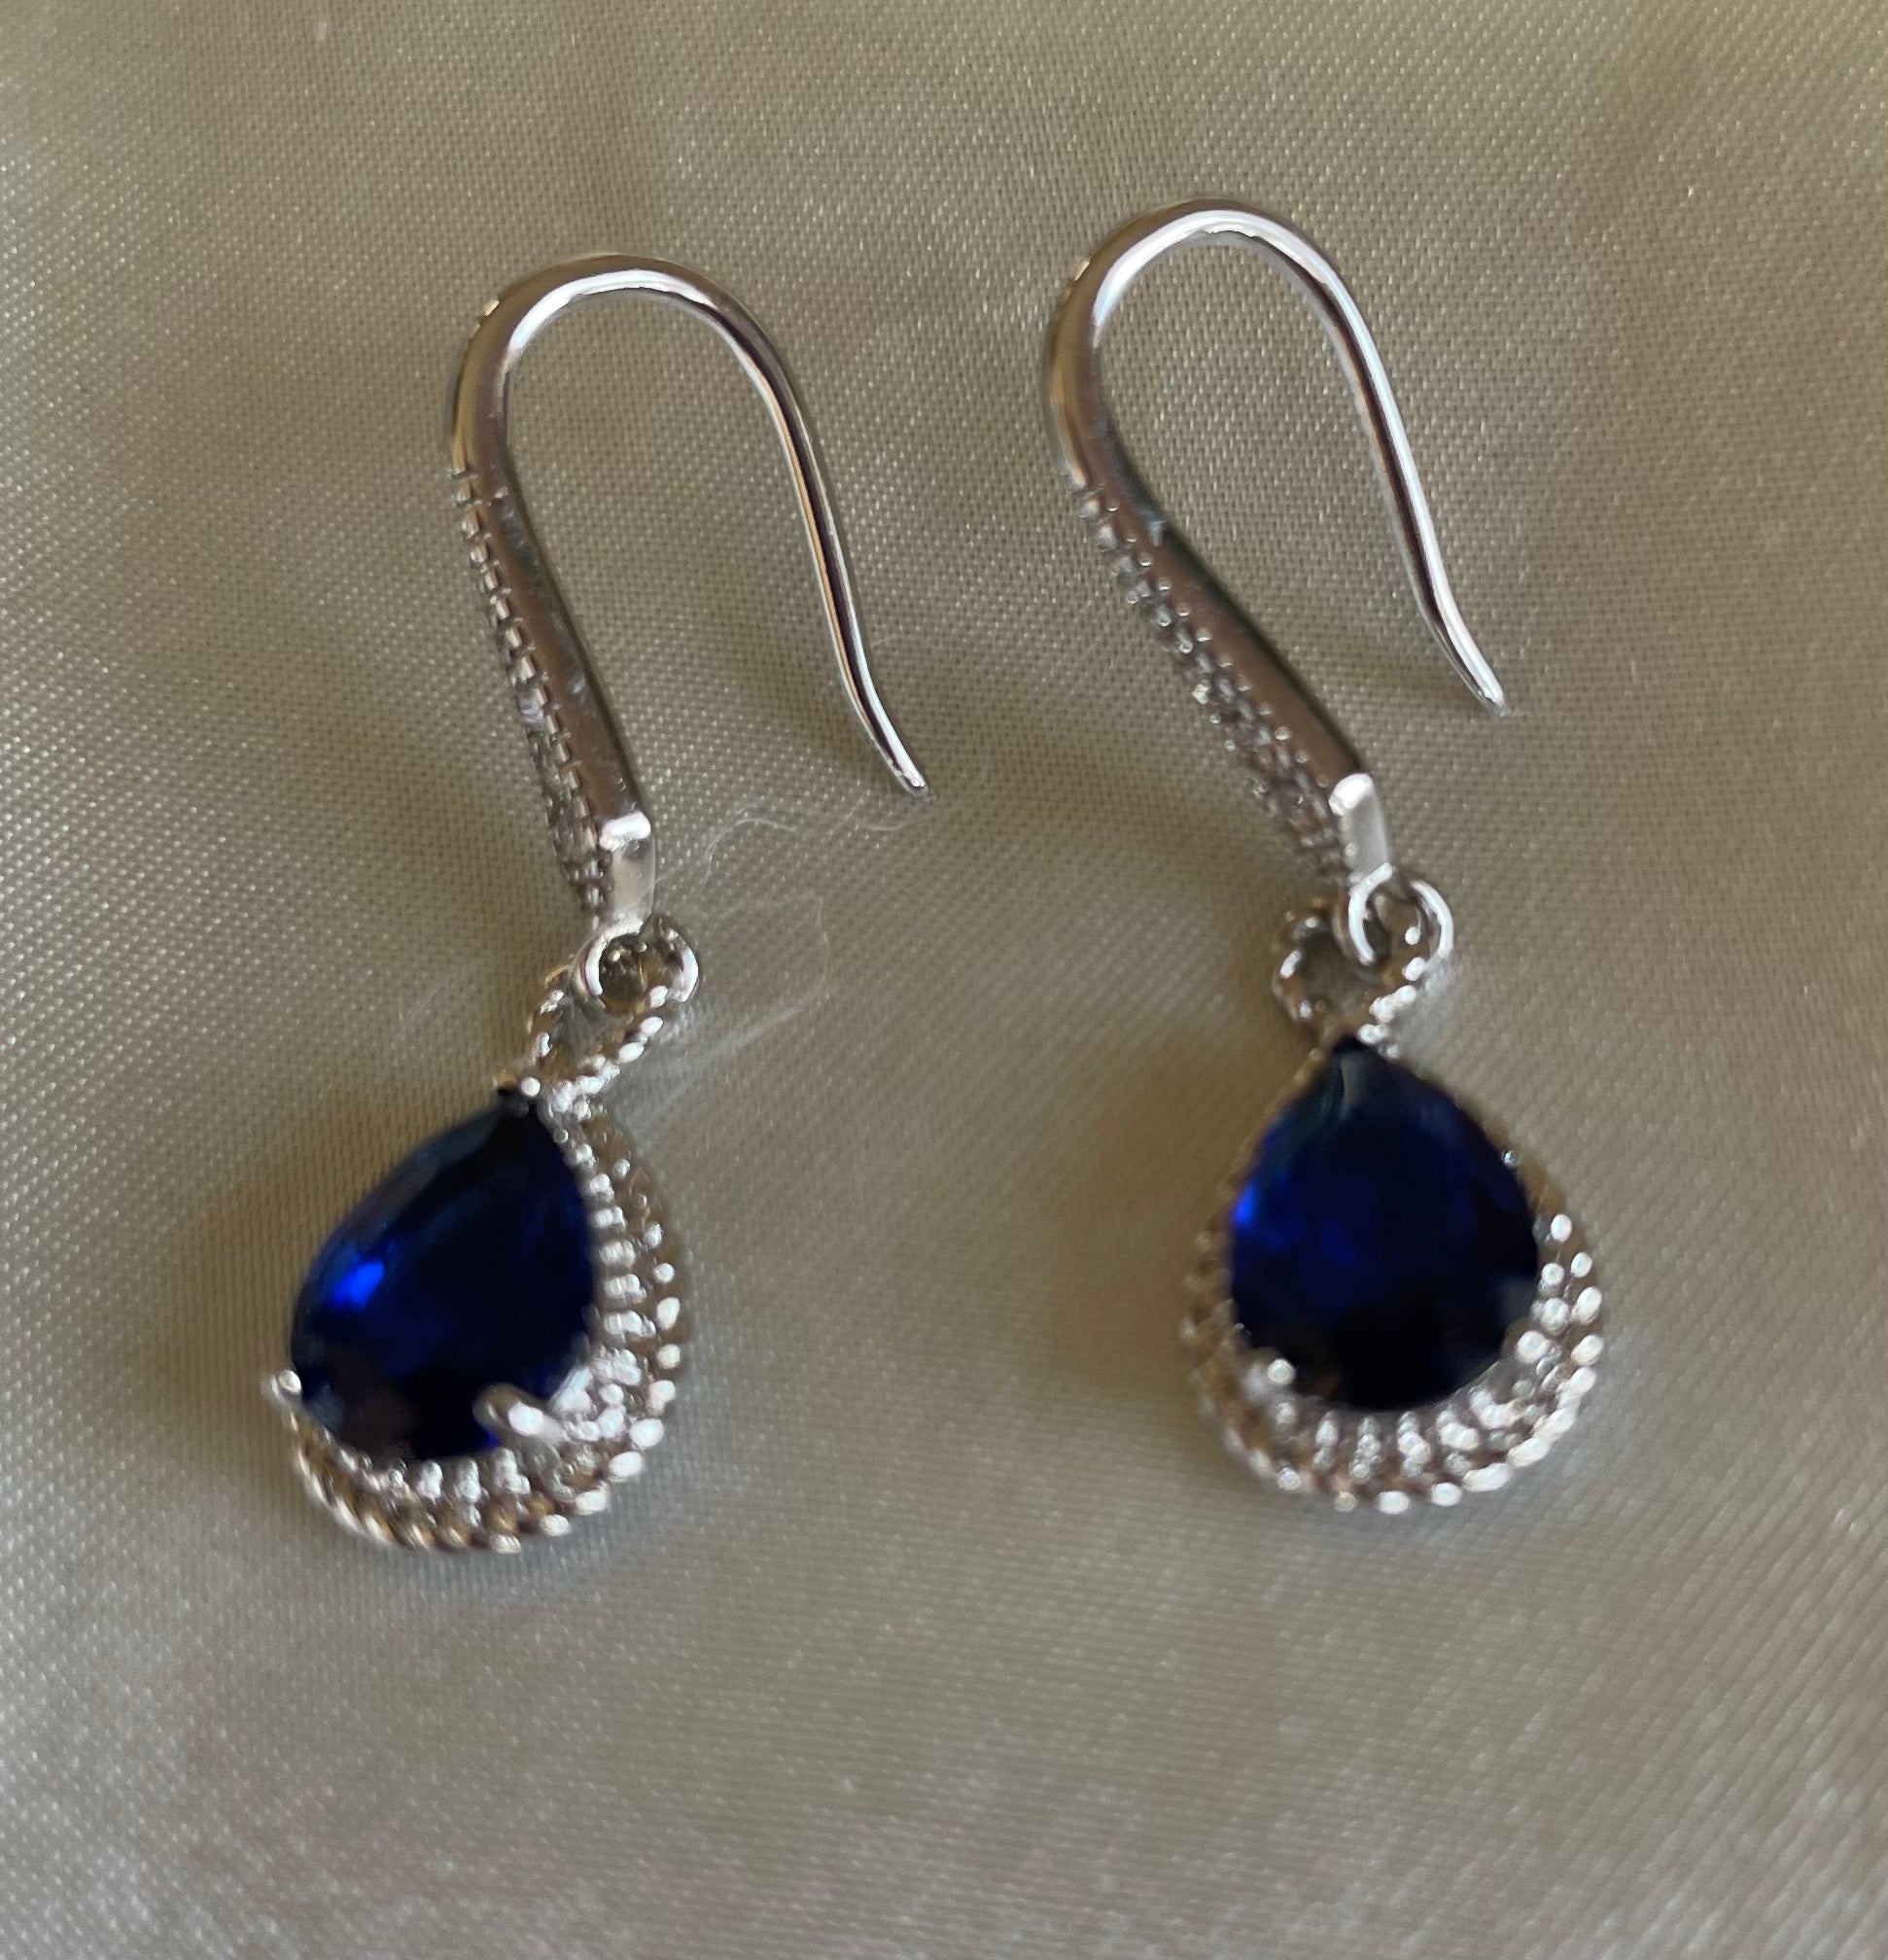 Blue Zirconian Pierced Earrings 2000s 925 Silver Plated Blue Cubic Zirconian Fashion Classic Pierced Earrings